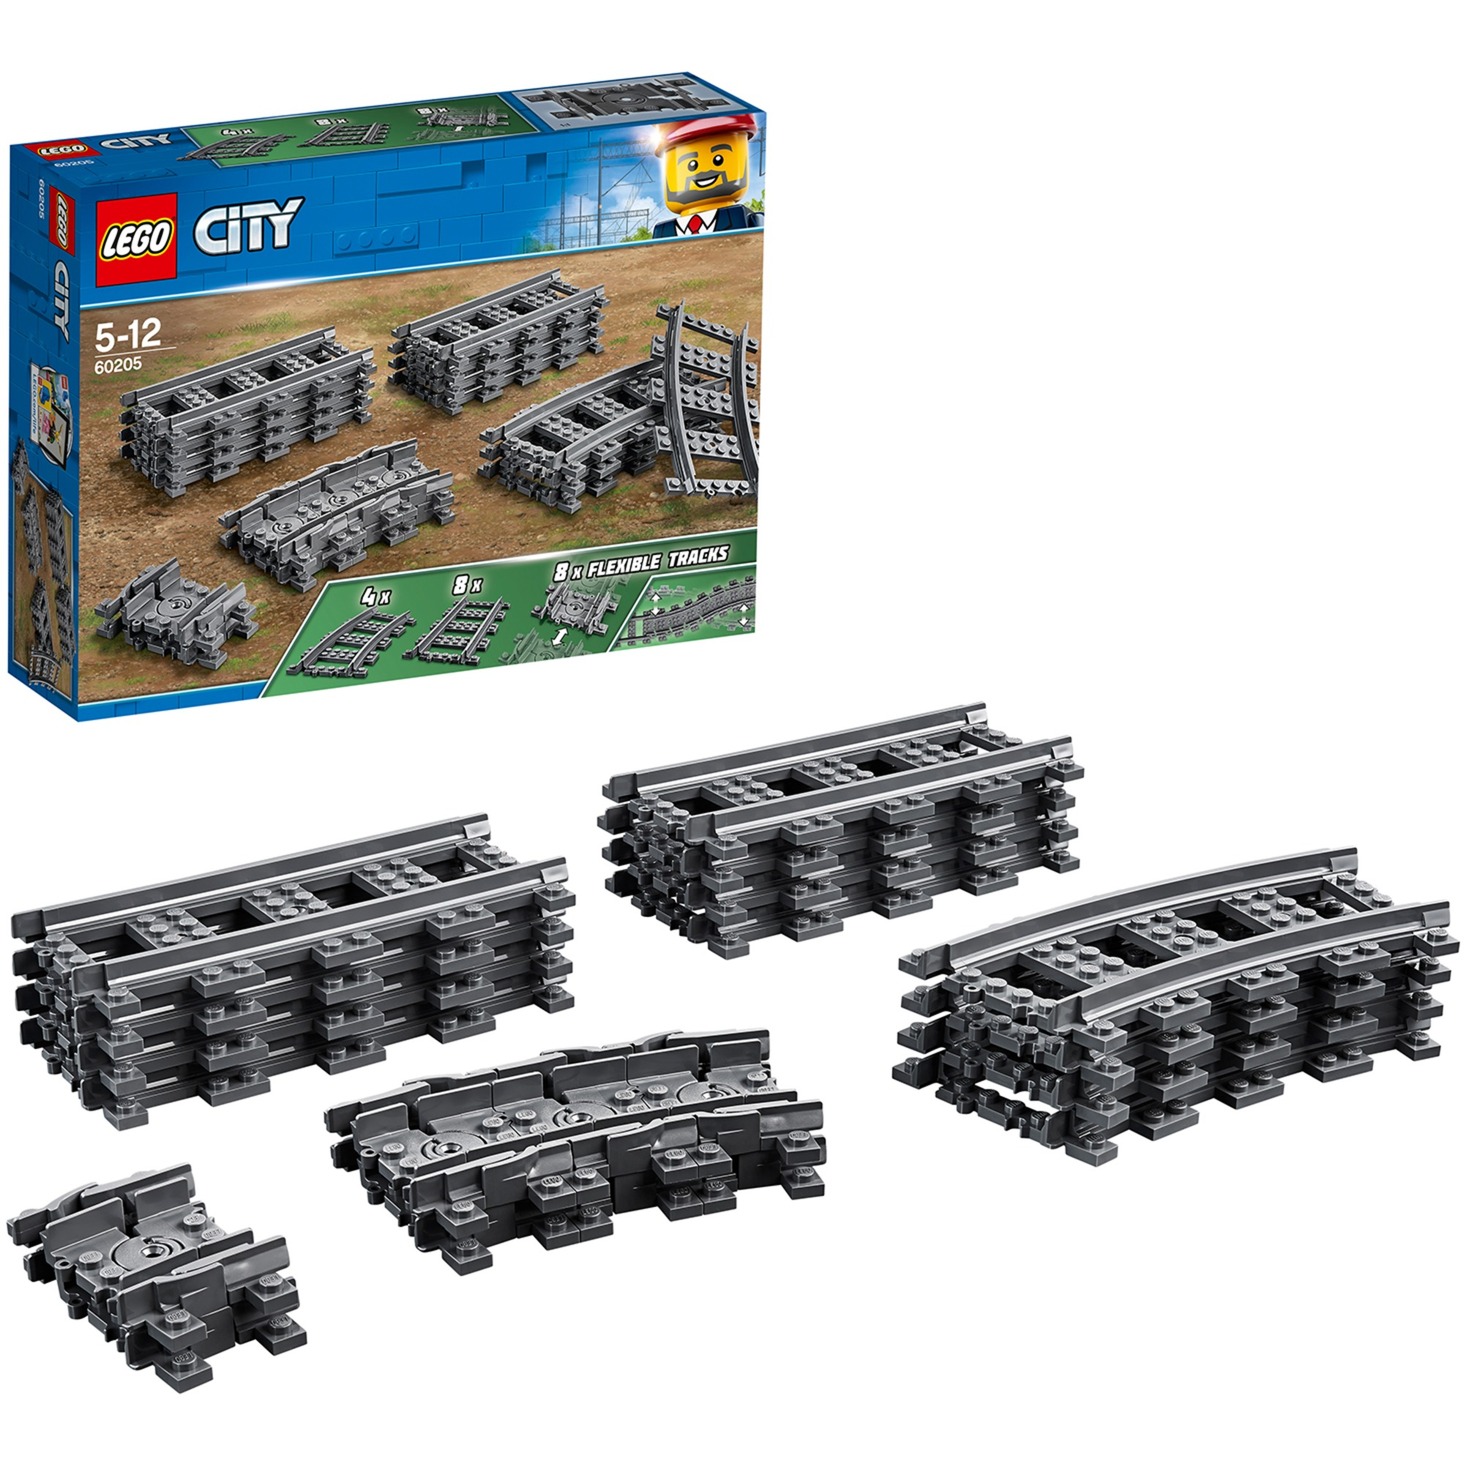 60205 City Schienen, Konstruktionsspielzeug von Lego